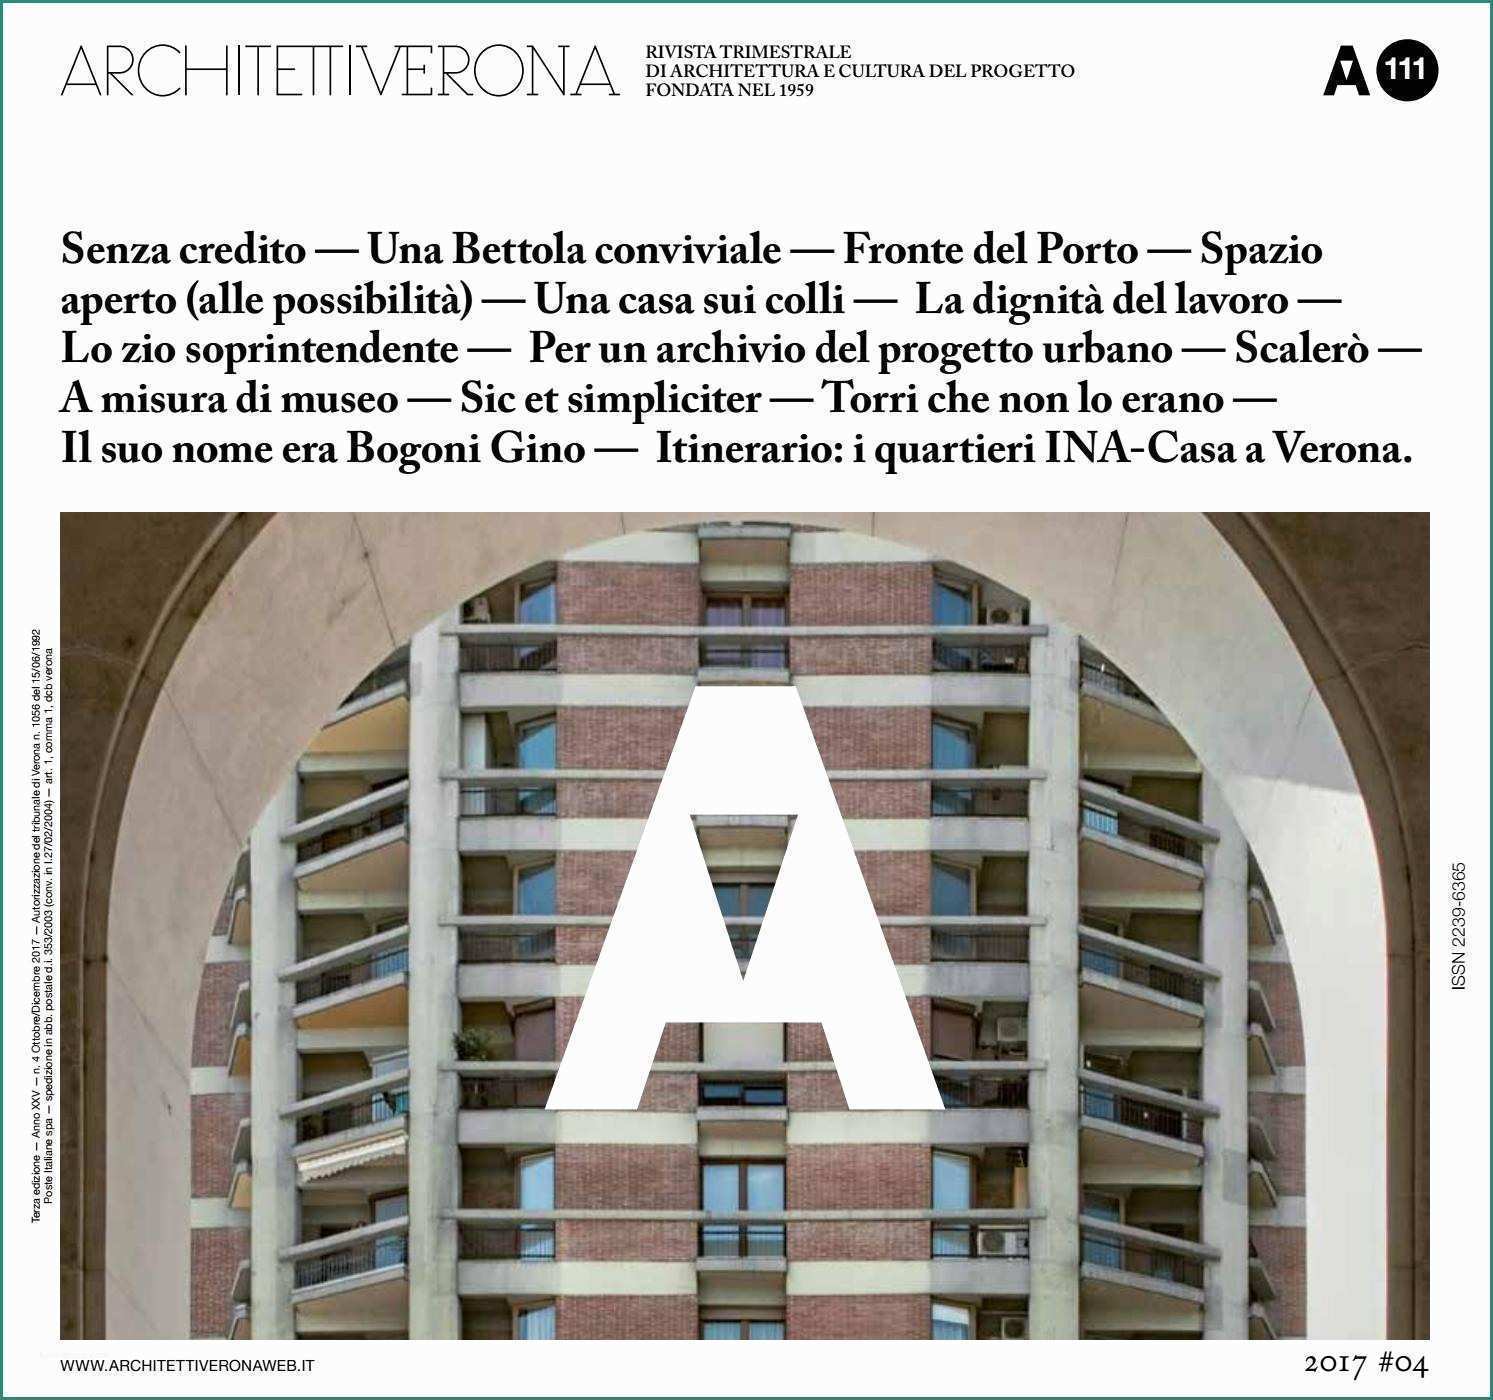 Prefabbricati Senza Concessione Edilizia E Architettiverona 111 by Architettiverona issuu